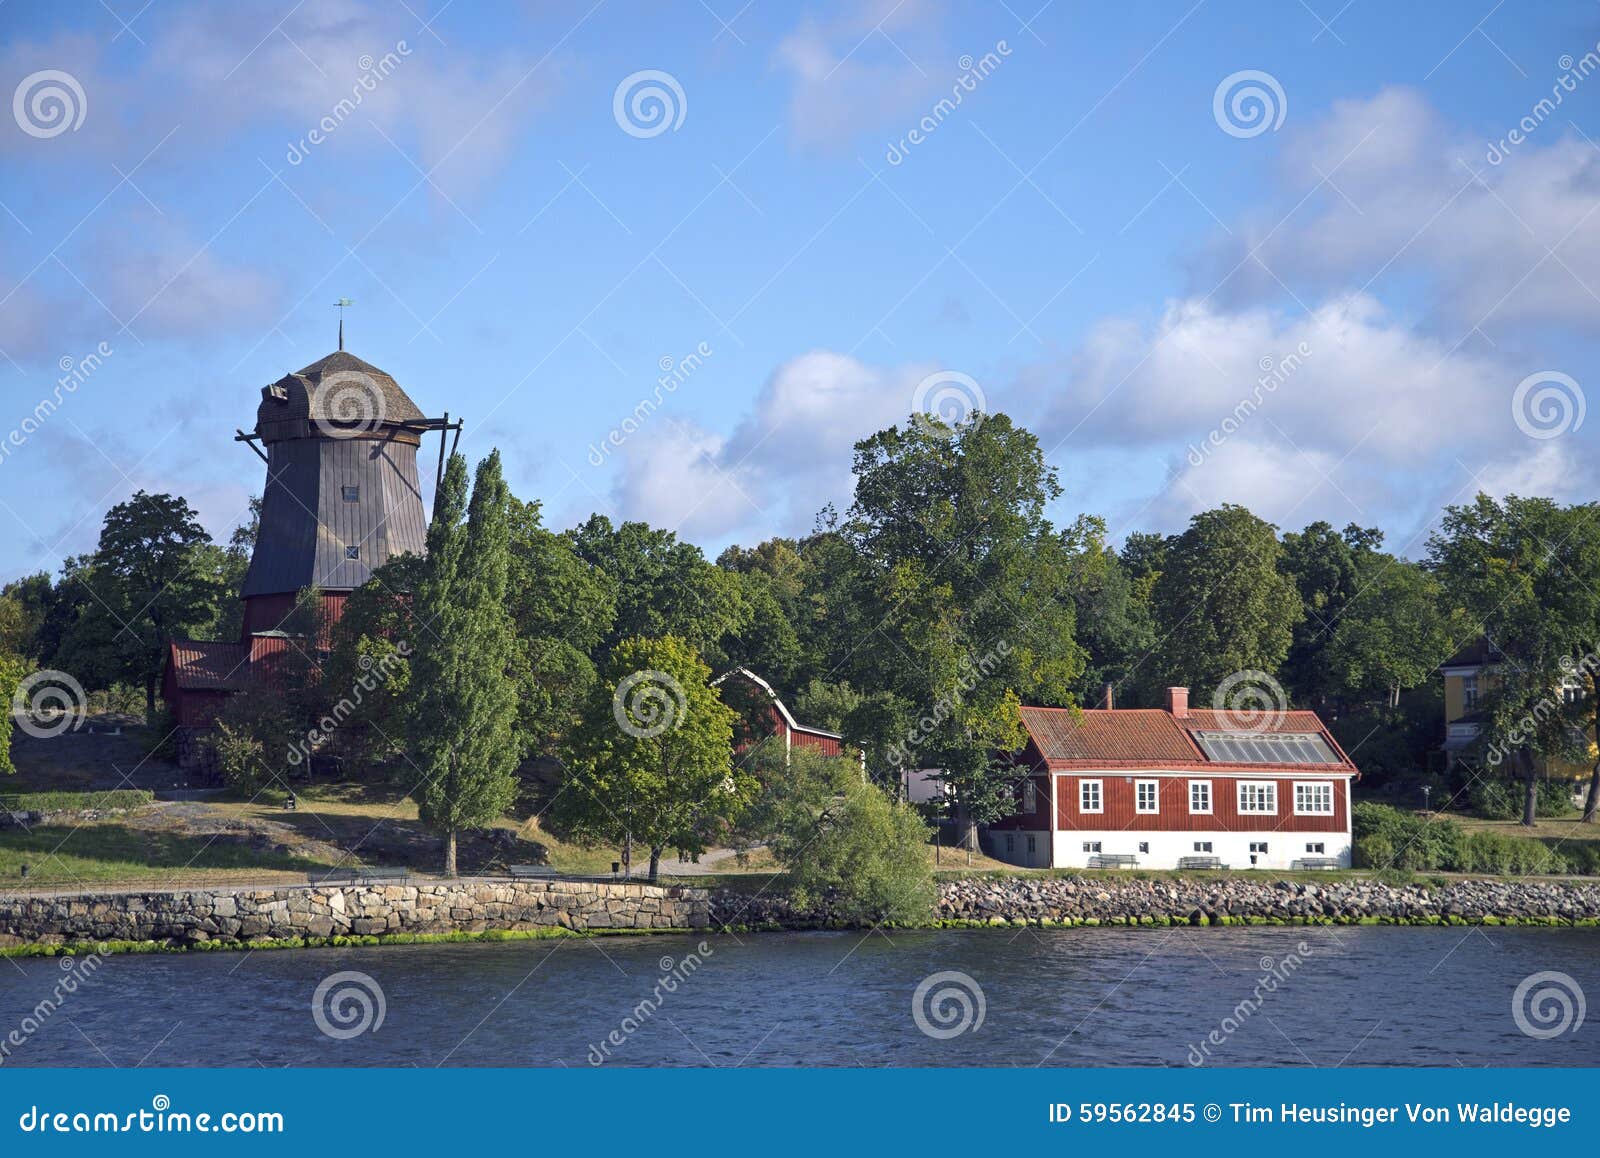 historic windmill, djurgarden, stockholm